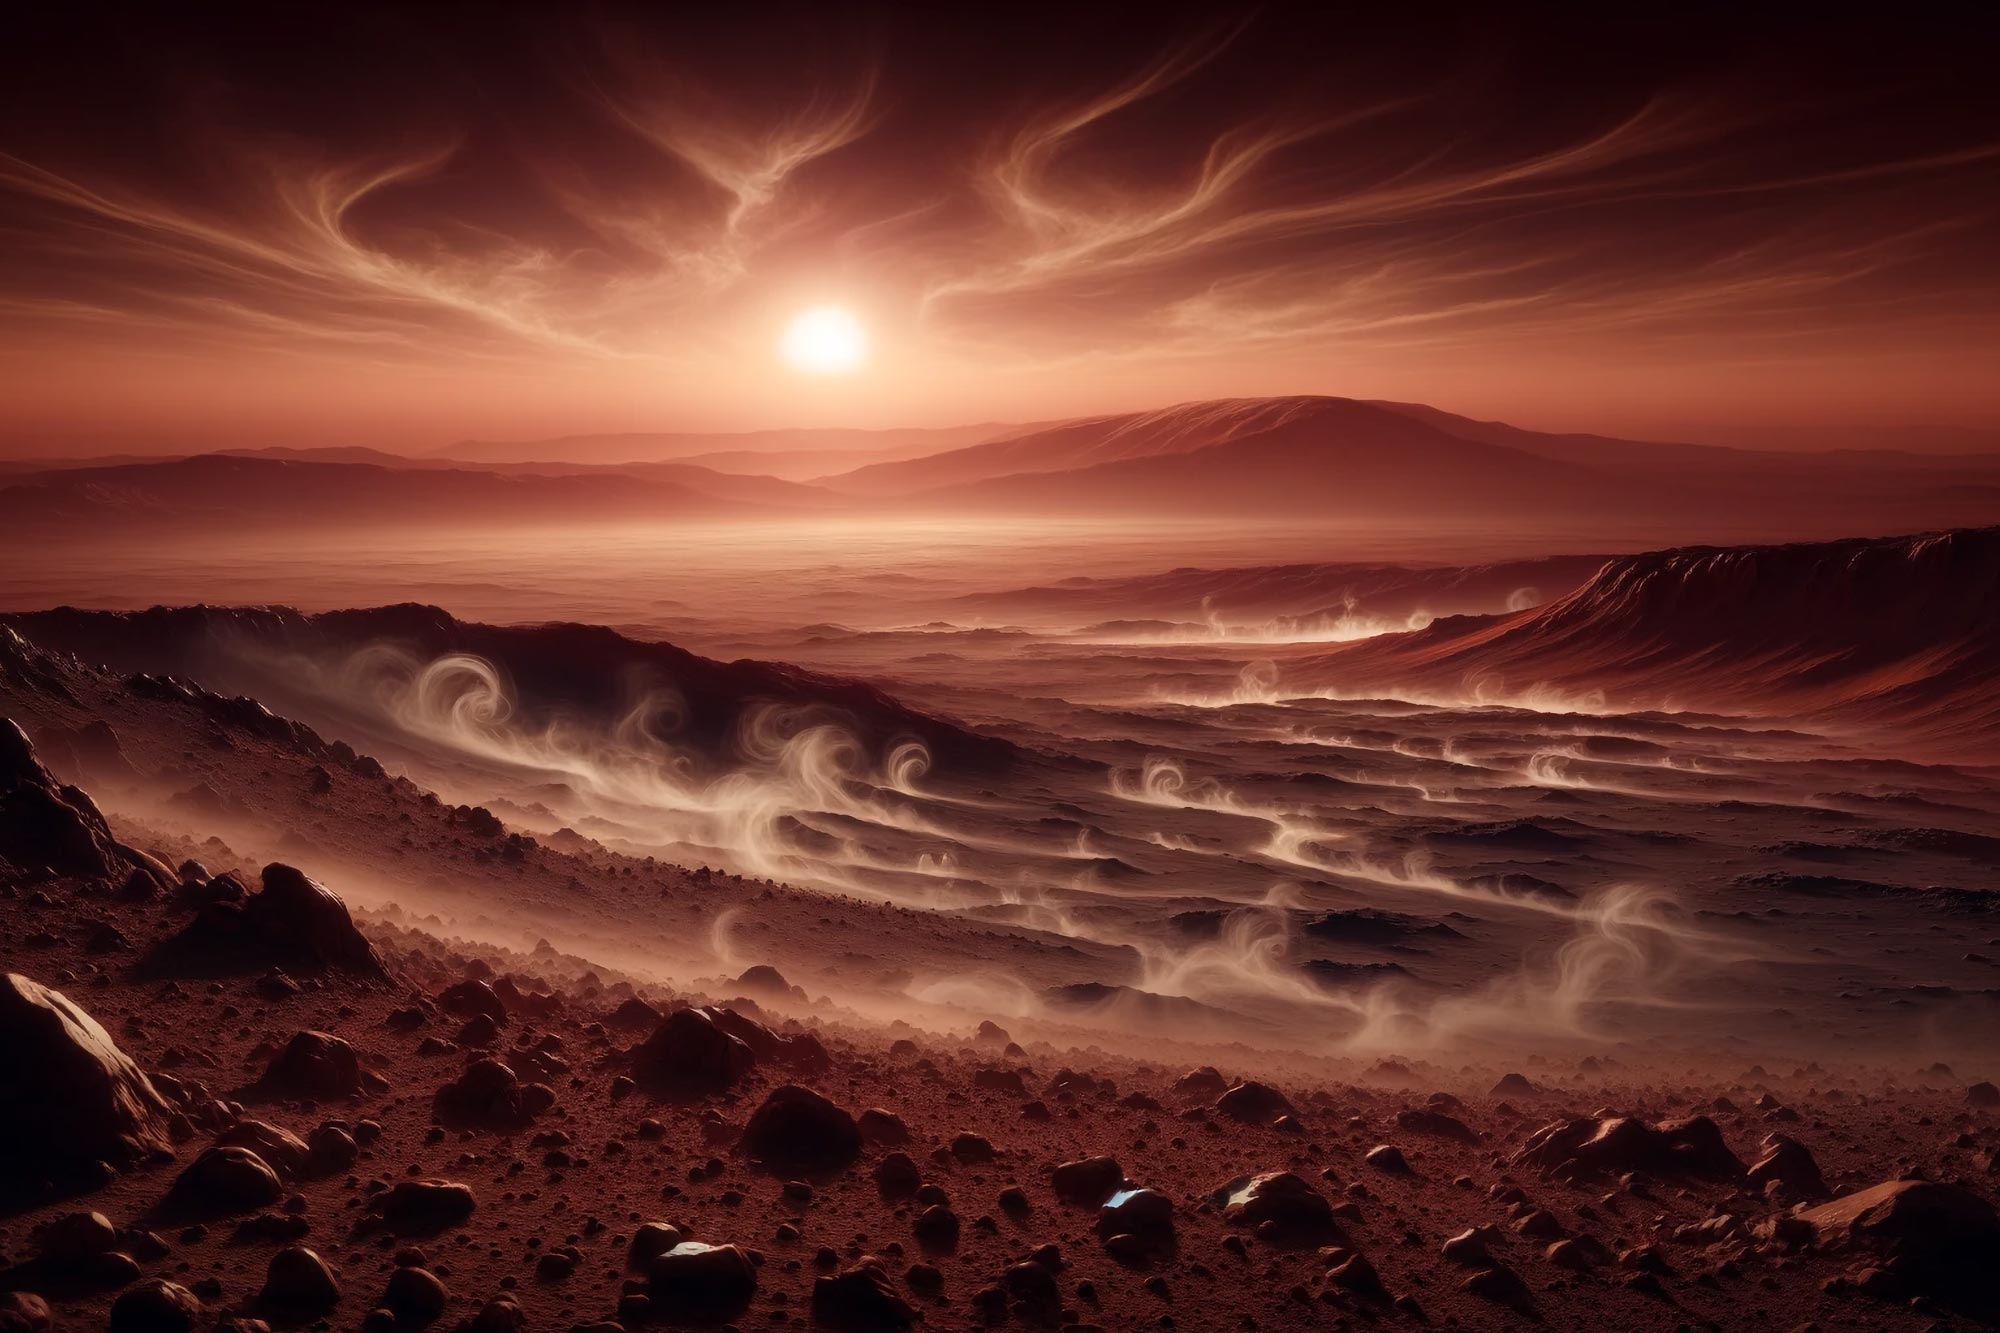 Marsa metāns mulsina zinātniekus: Curiosity rovera pārsteidzošais atklājums